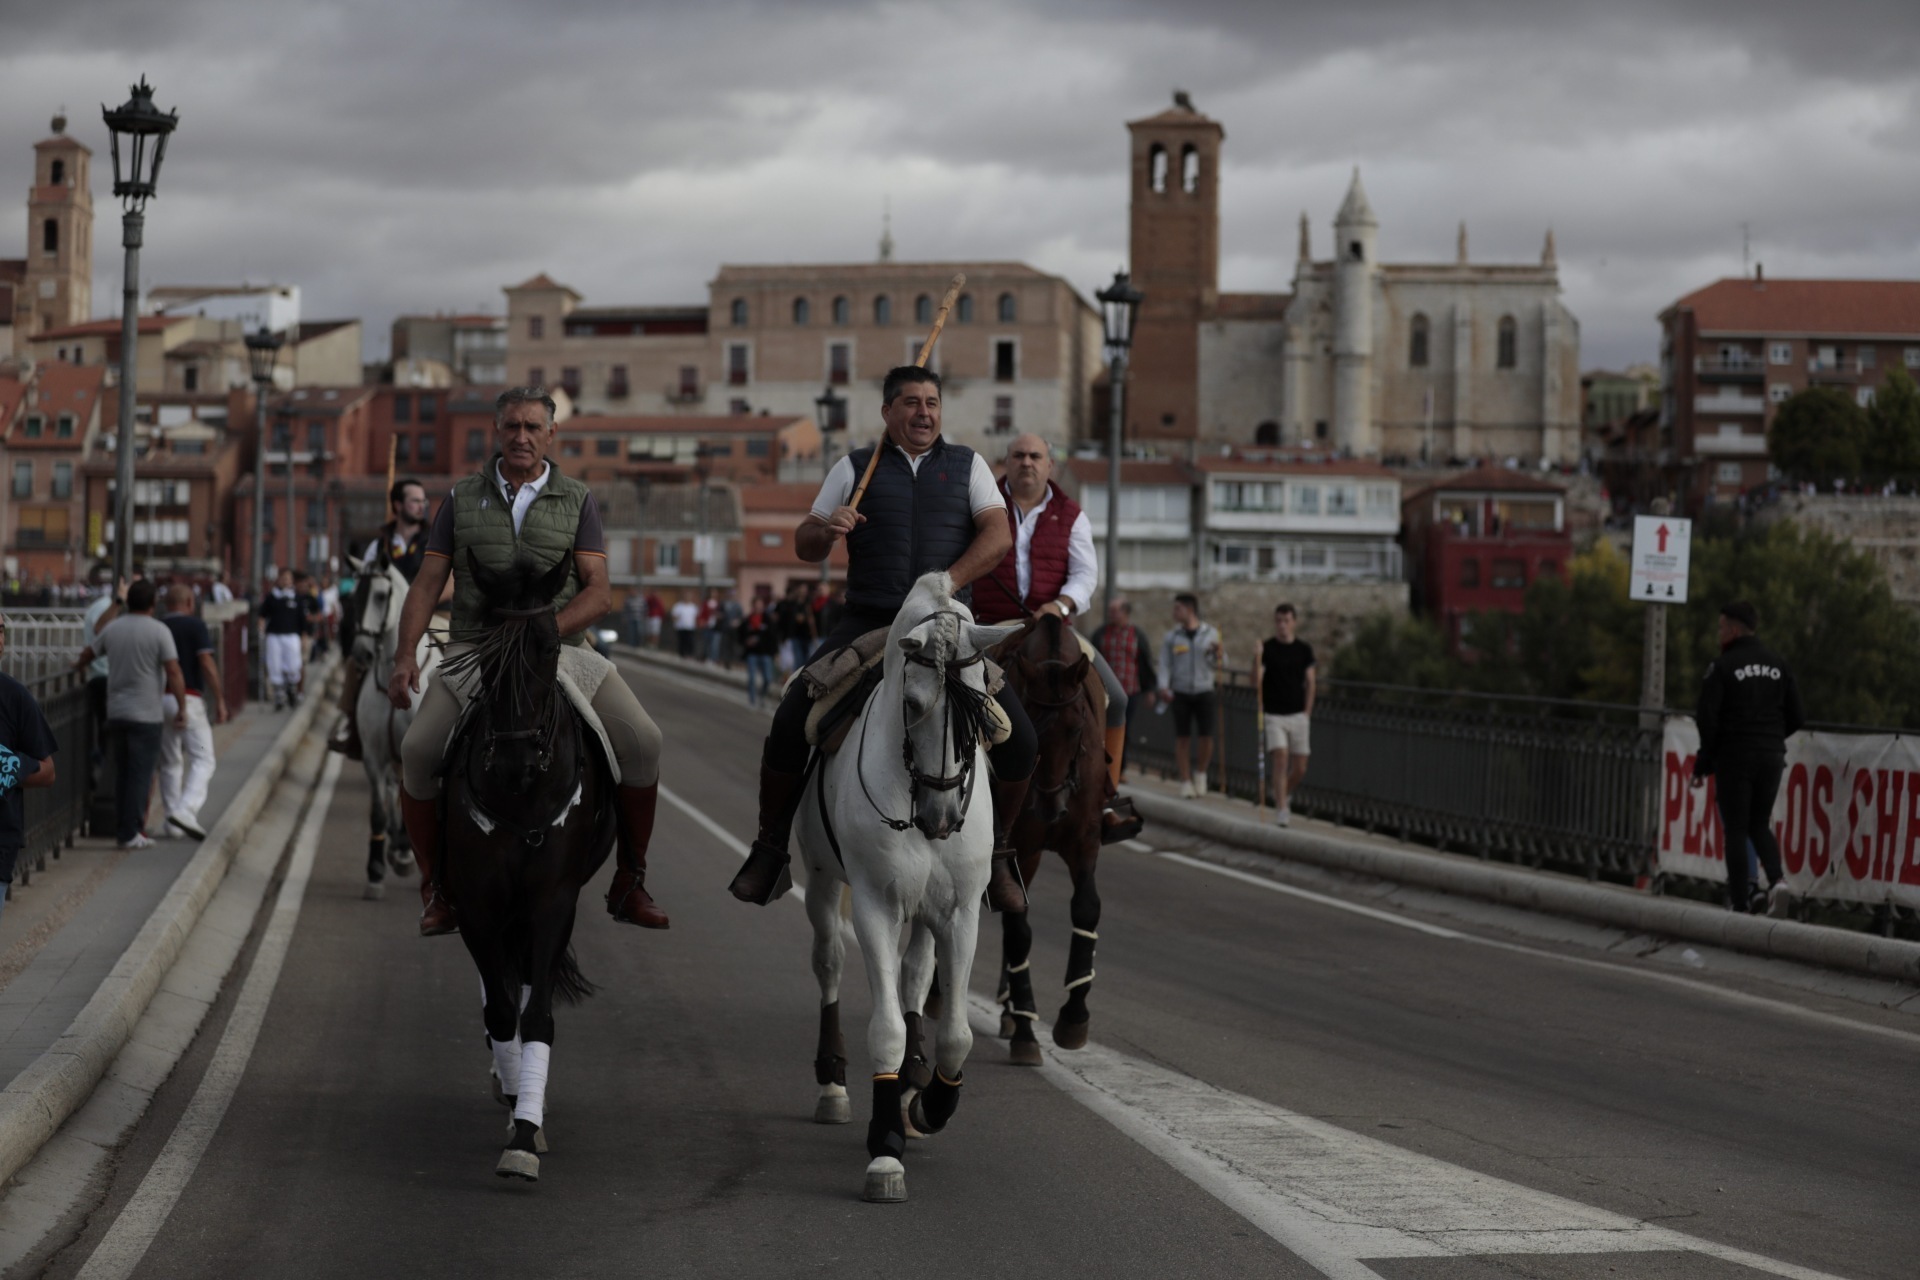 Participantes a caballo en el torneo Toro de la Vega, en Tordesillas.